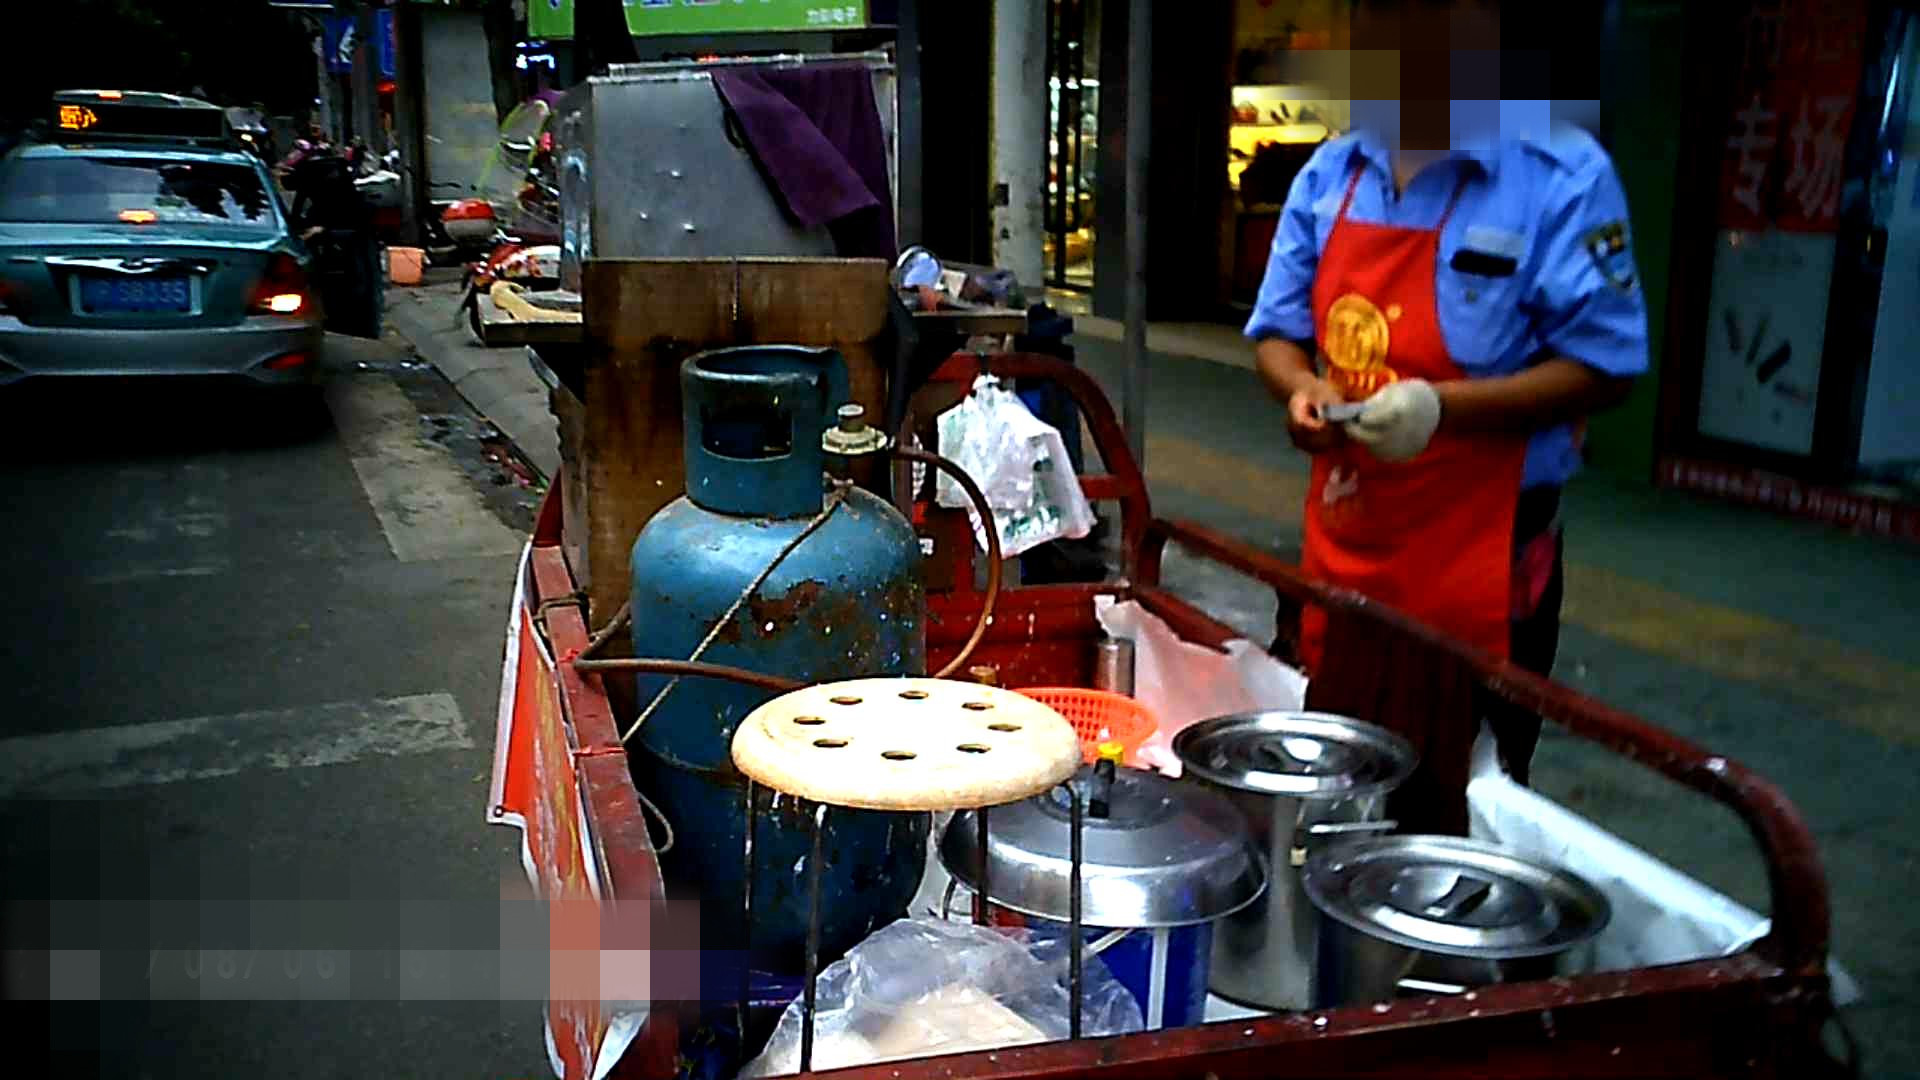 印度街头小贩用黄铜锅的热土锅煮茶 库存图片. 图片 包括有 加尔各答, 茶点, 锅炉工人, 水壶, 牛奶 - 173157619